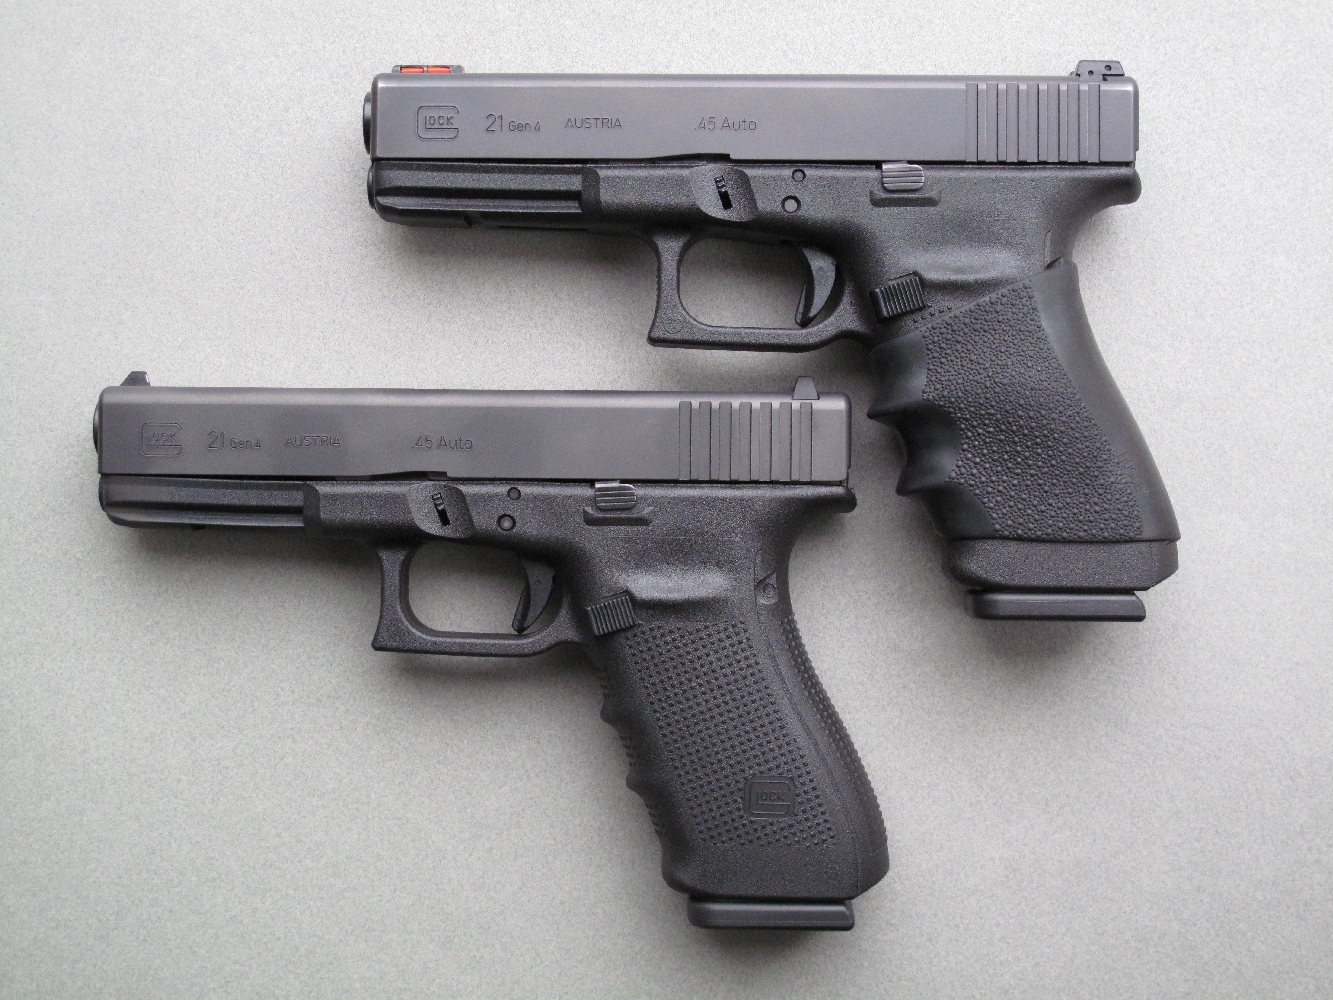 Comparaison entre le Glock 21 standard qui nous a été confié pour cet essai et l’arme personnelle de Jean, laquelle a reçu quelques améliorations au niveau du départ, de la prise en main et des éléments de visée.